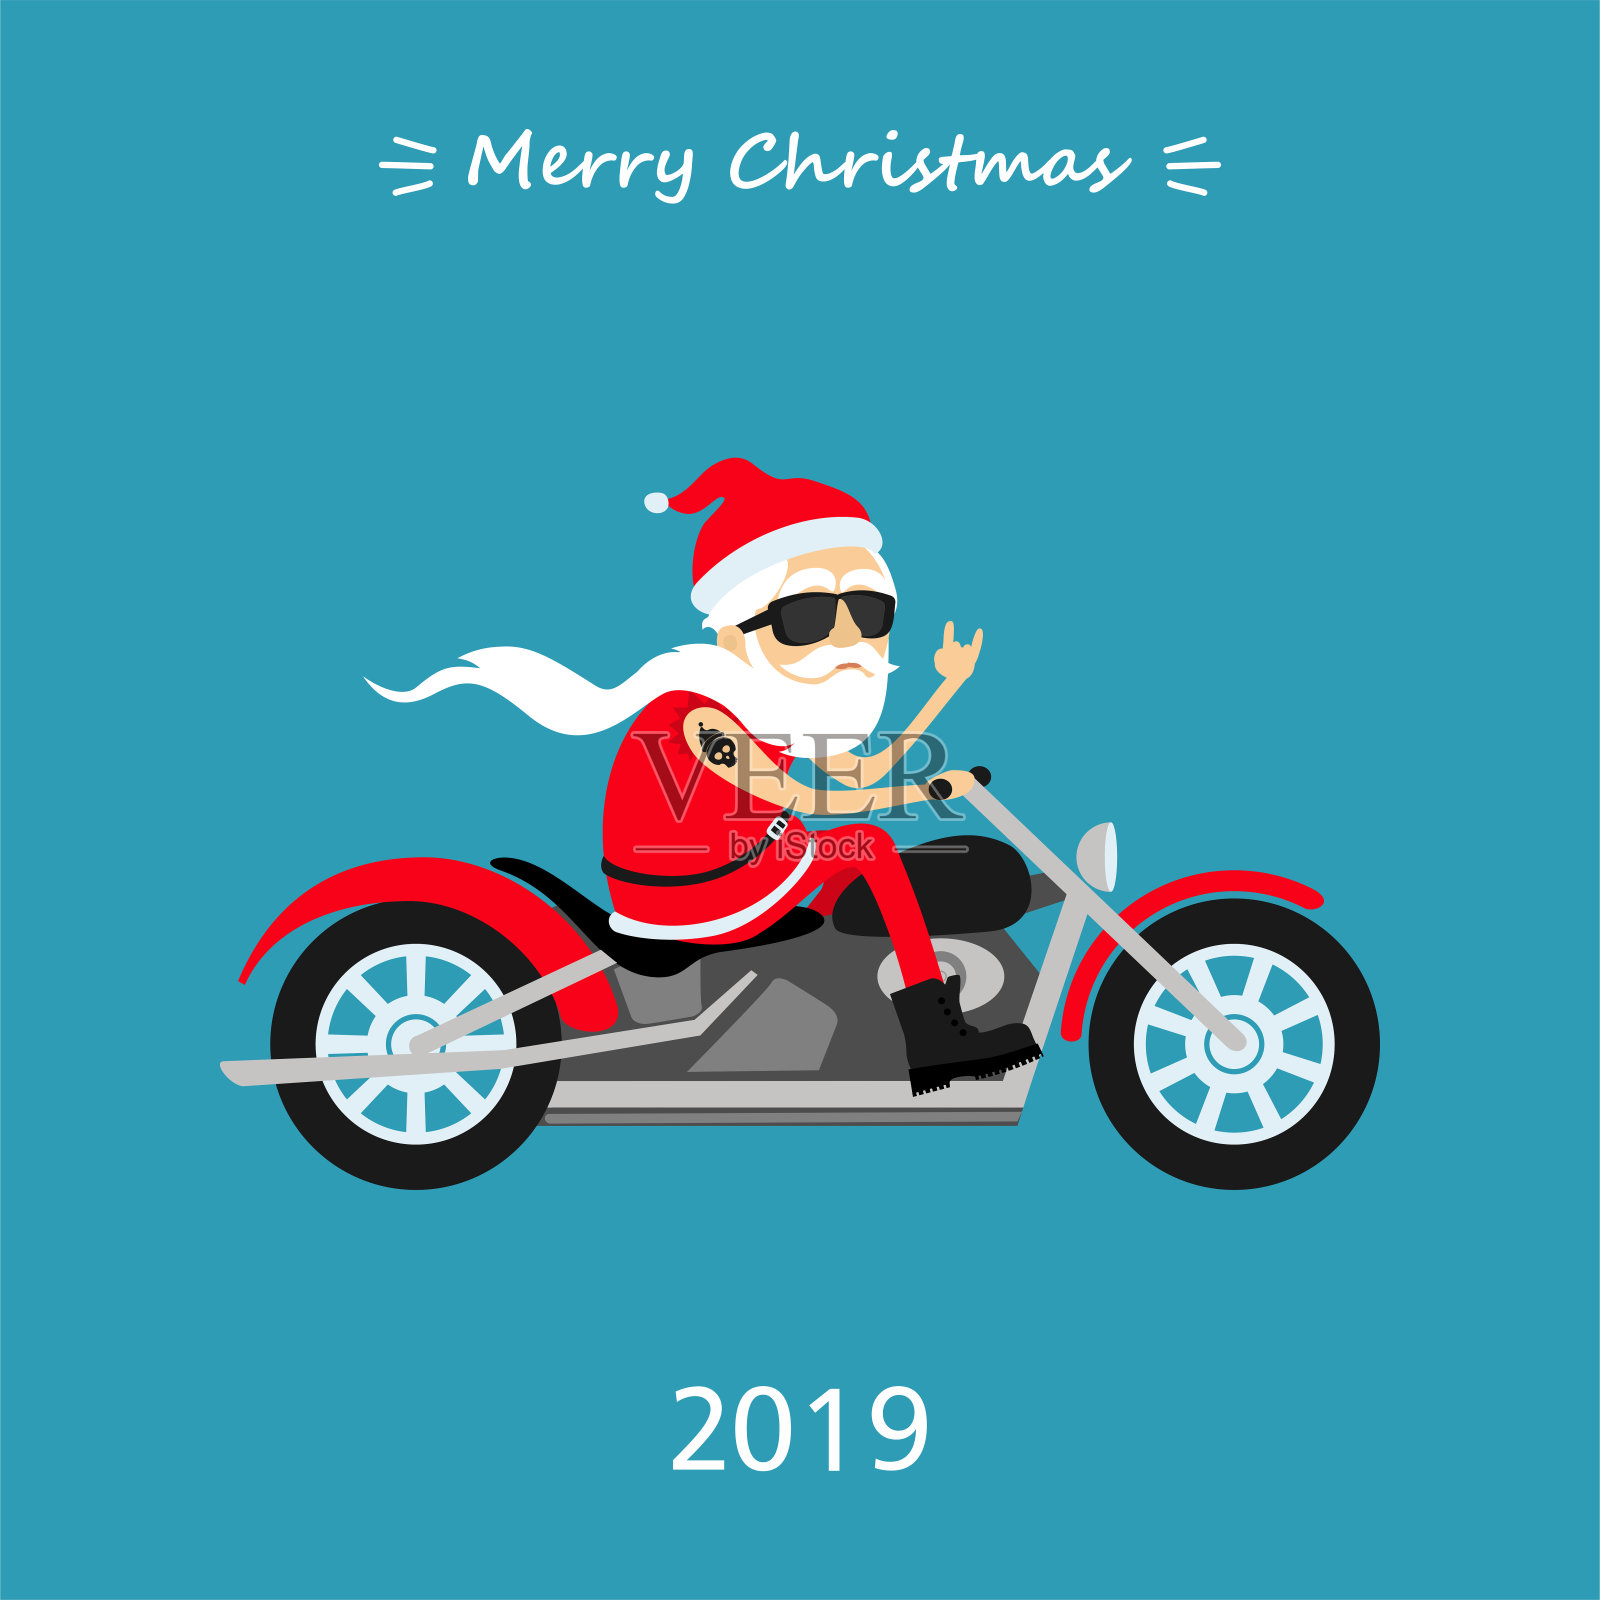 圣诞快乐!圣诞老人骑摩托车。2019年圣诞贺卡插画图片素材